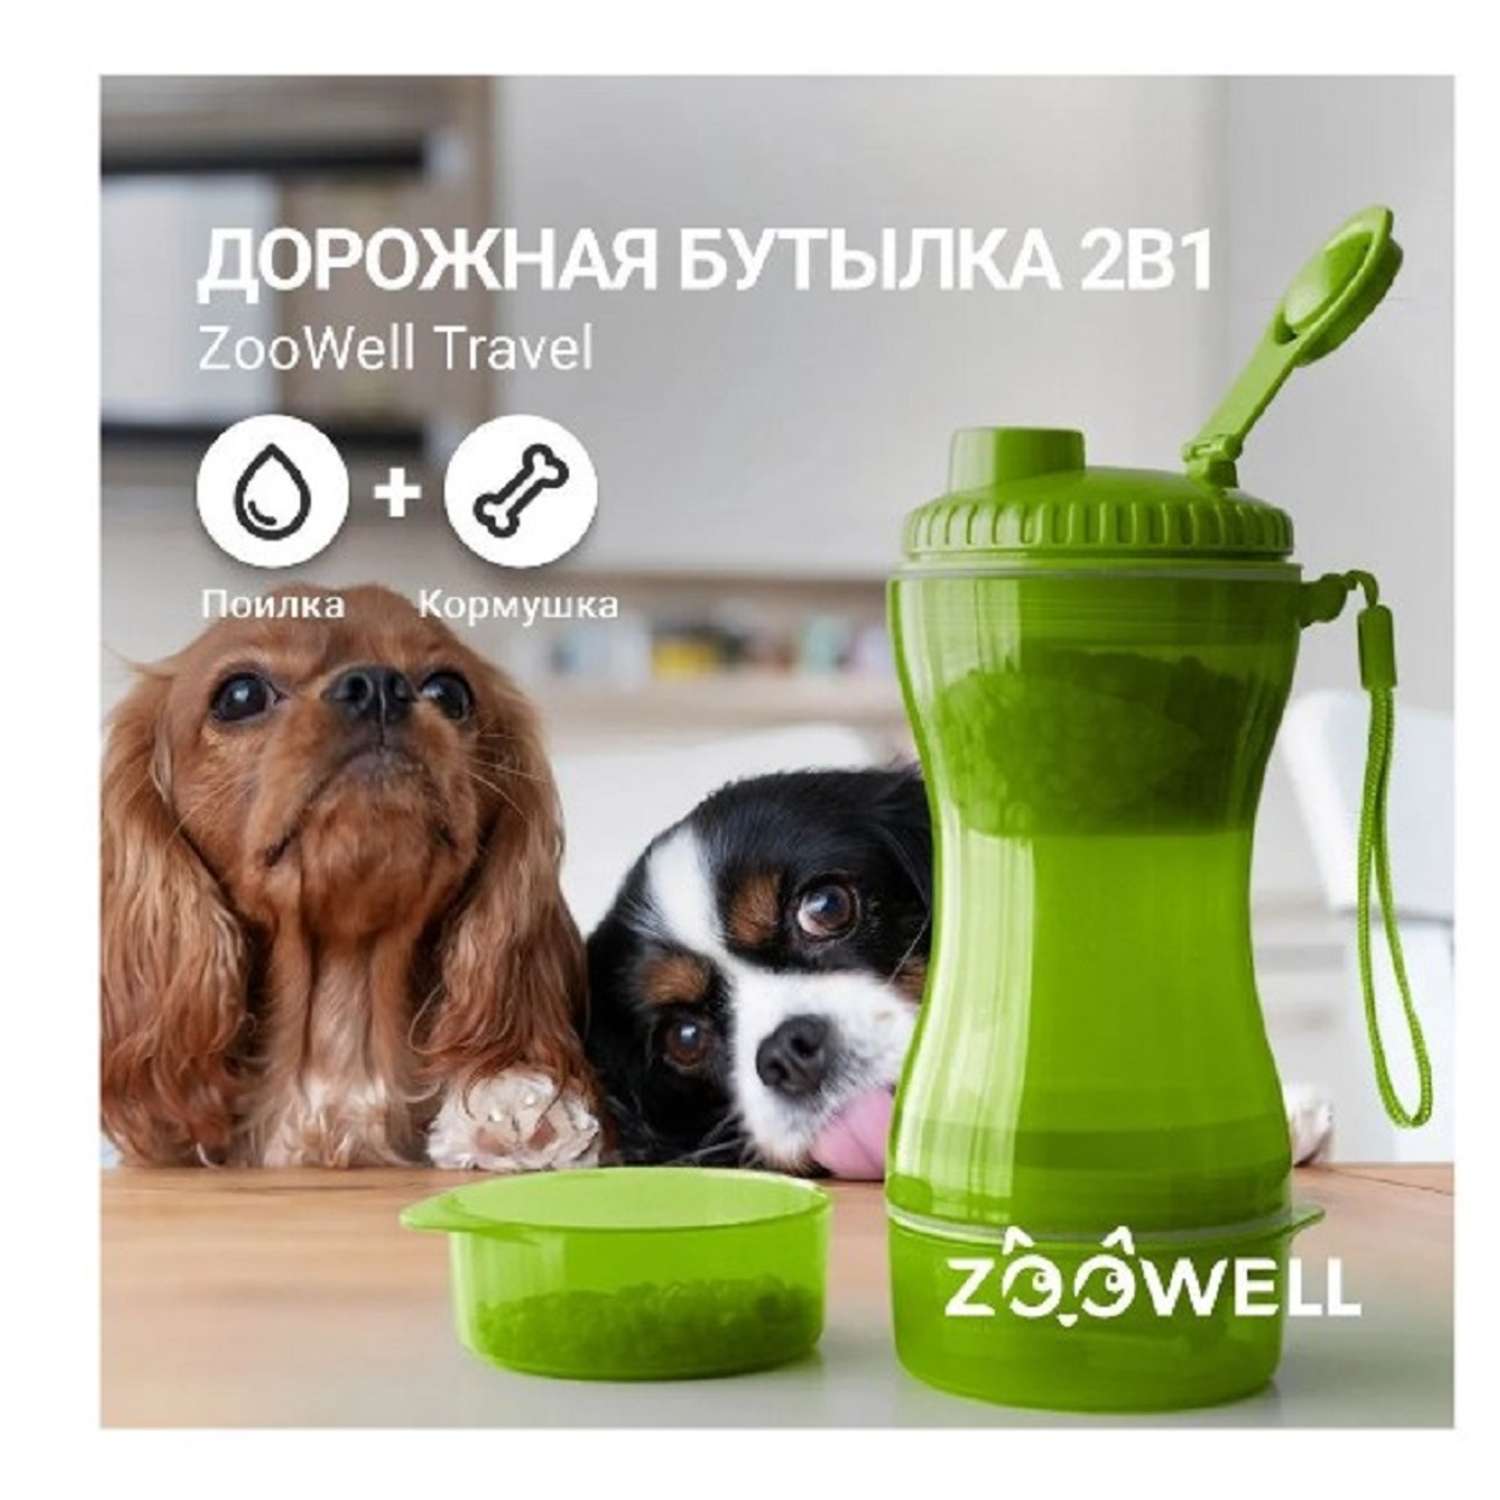 Бутылка для собак ZDK ZooWell Travel дорожная кормушка 2 в 1 зеленая для прогулок и путешествий - фото 2